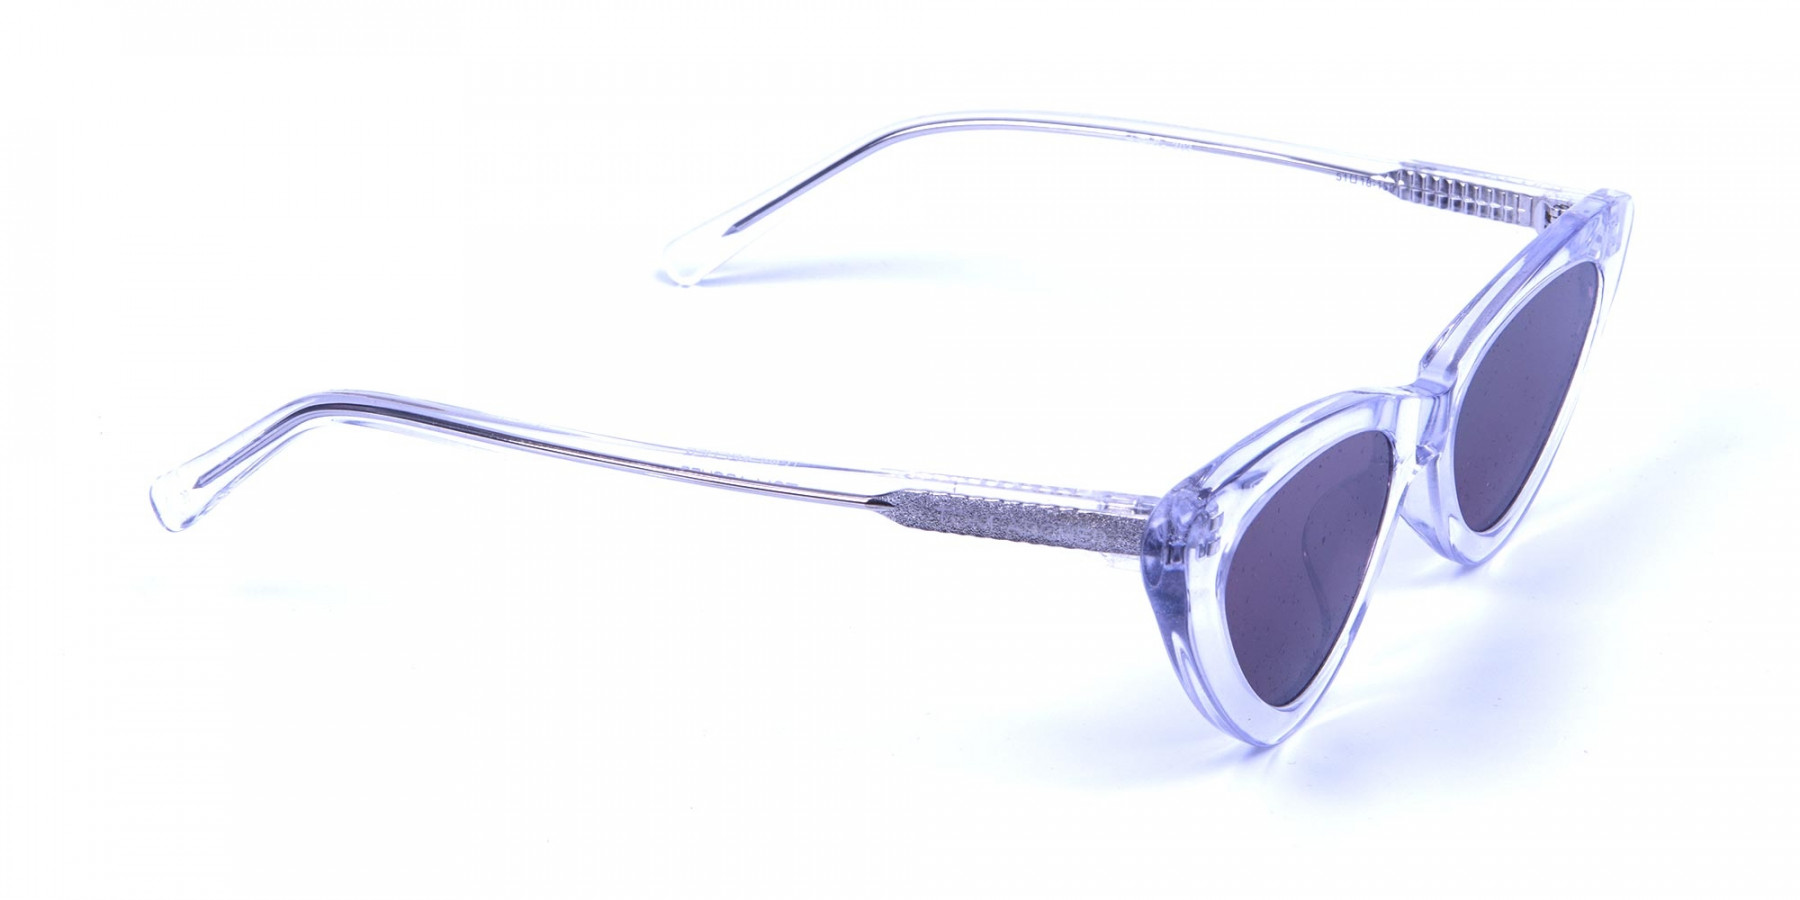 Clear Frame Cat Eye Sunglasses 